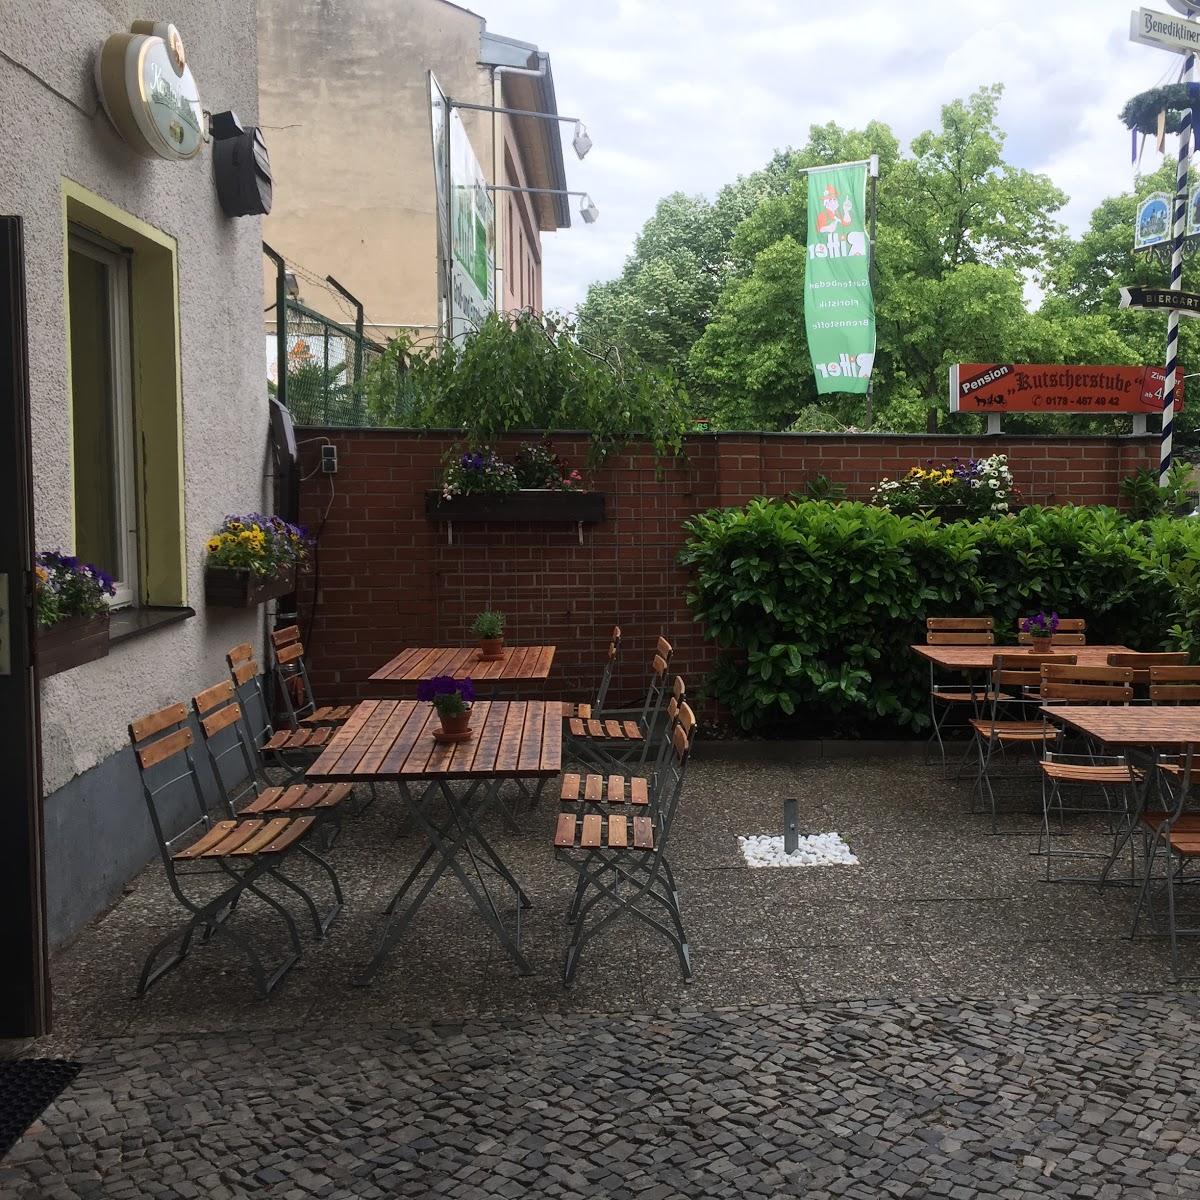 Restaurant "Lavendel Garten" in Berlin